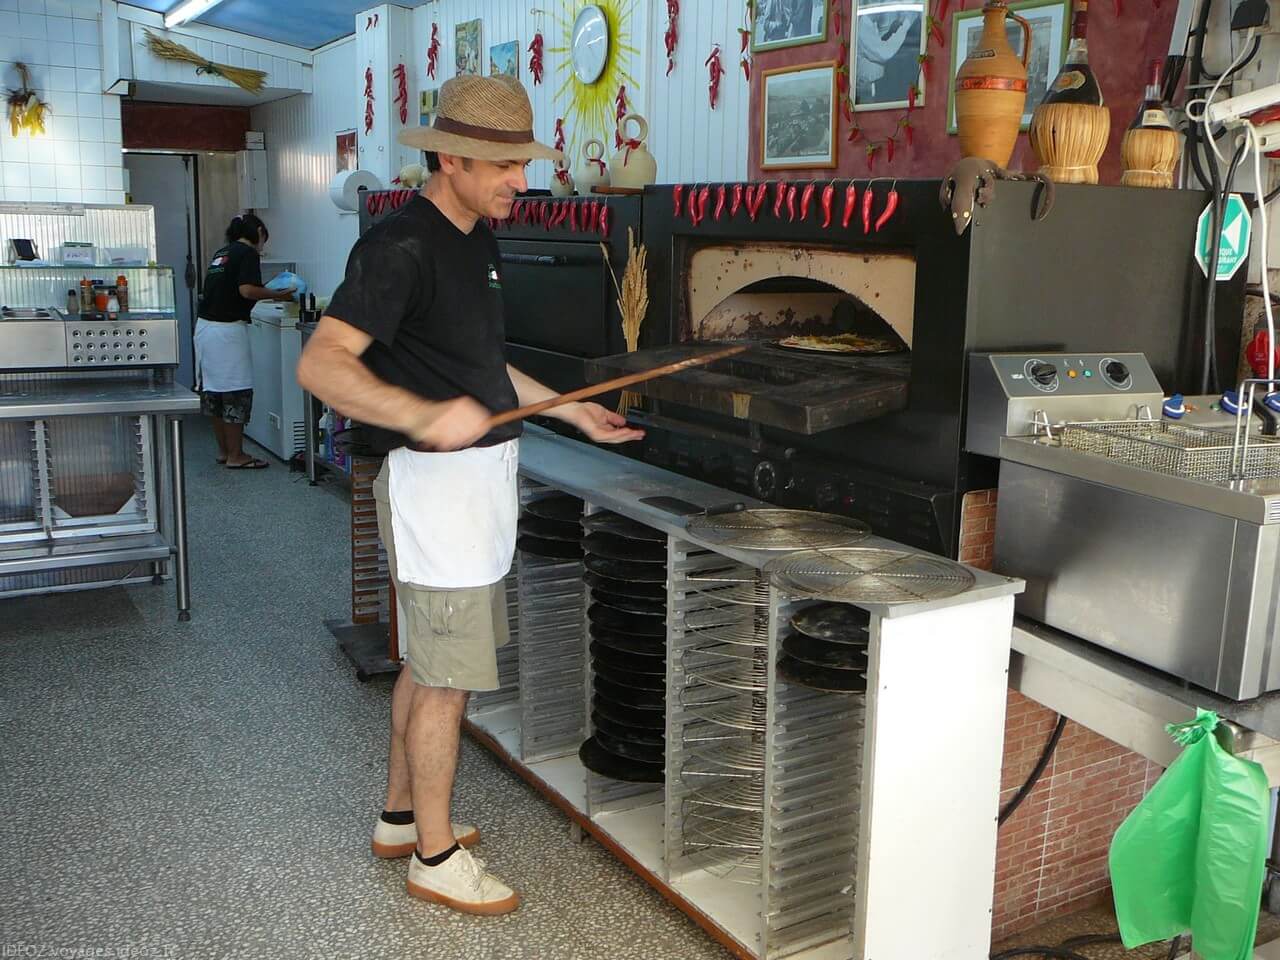 Patrick pizzaiolo derrière les fourneaux de la pizzeria portofino à Port la nouvelle